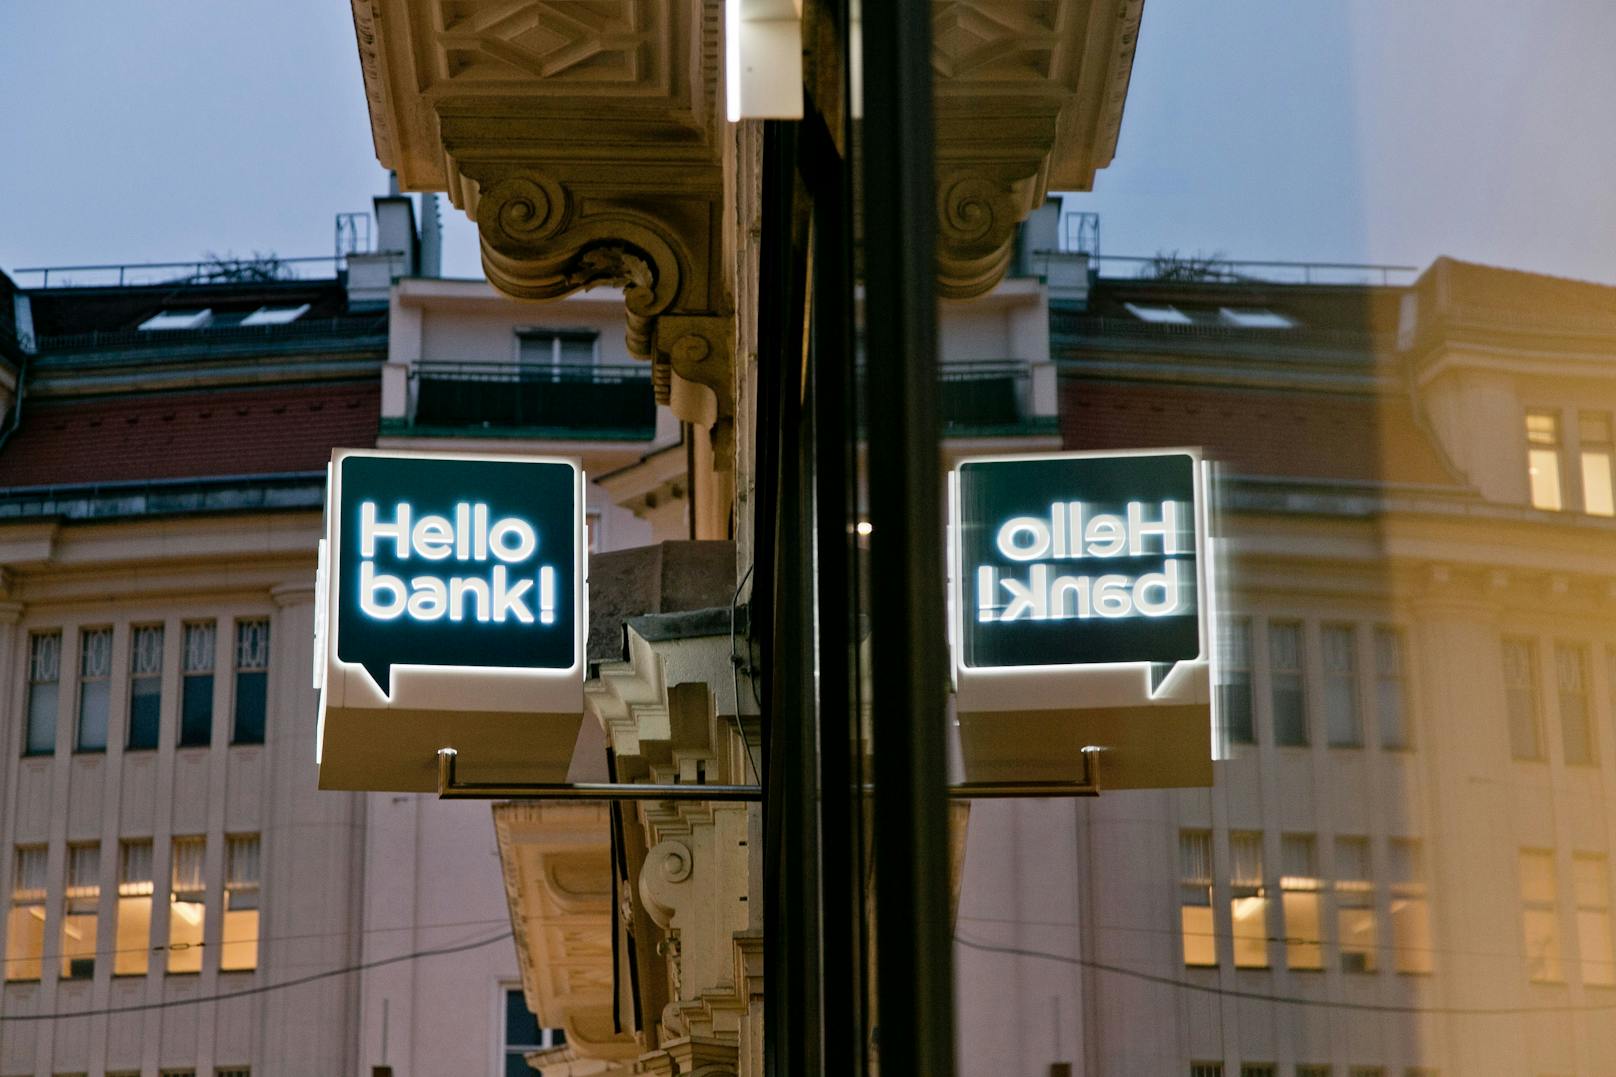 Die heimische BAWAG Group übernimmt den österreichischen Marktführer im Onlinebrokerage, die "Hello bank!".